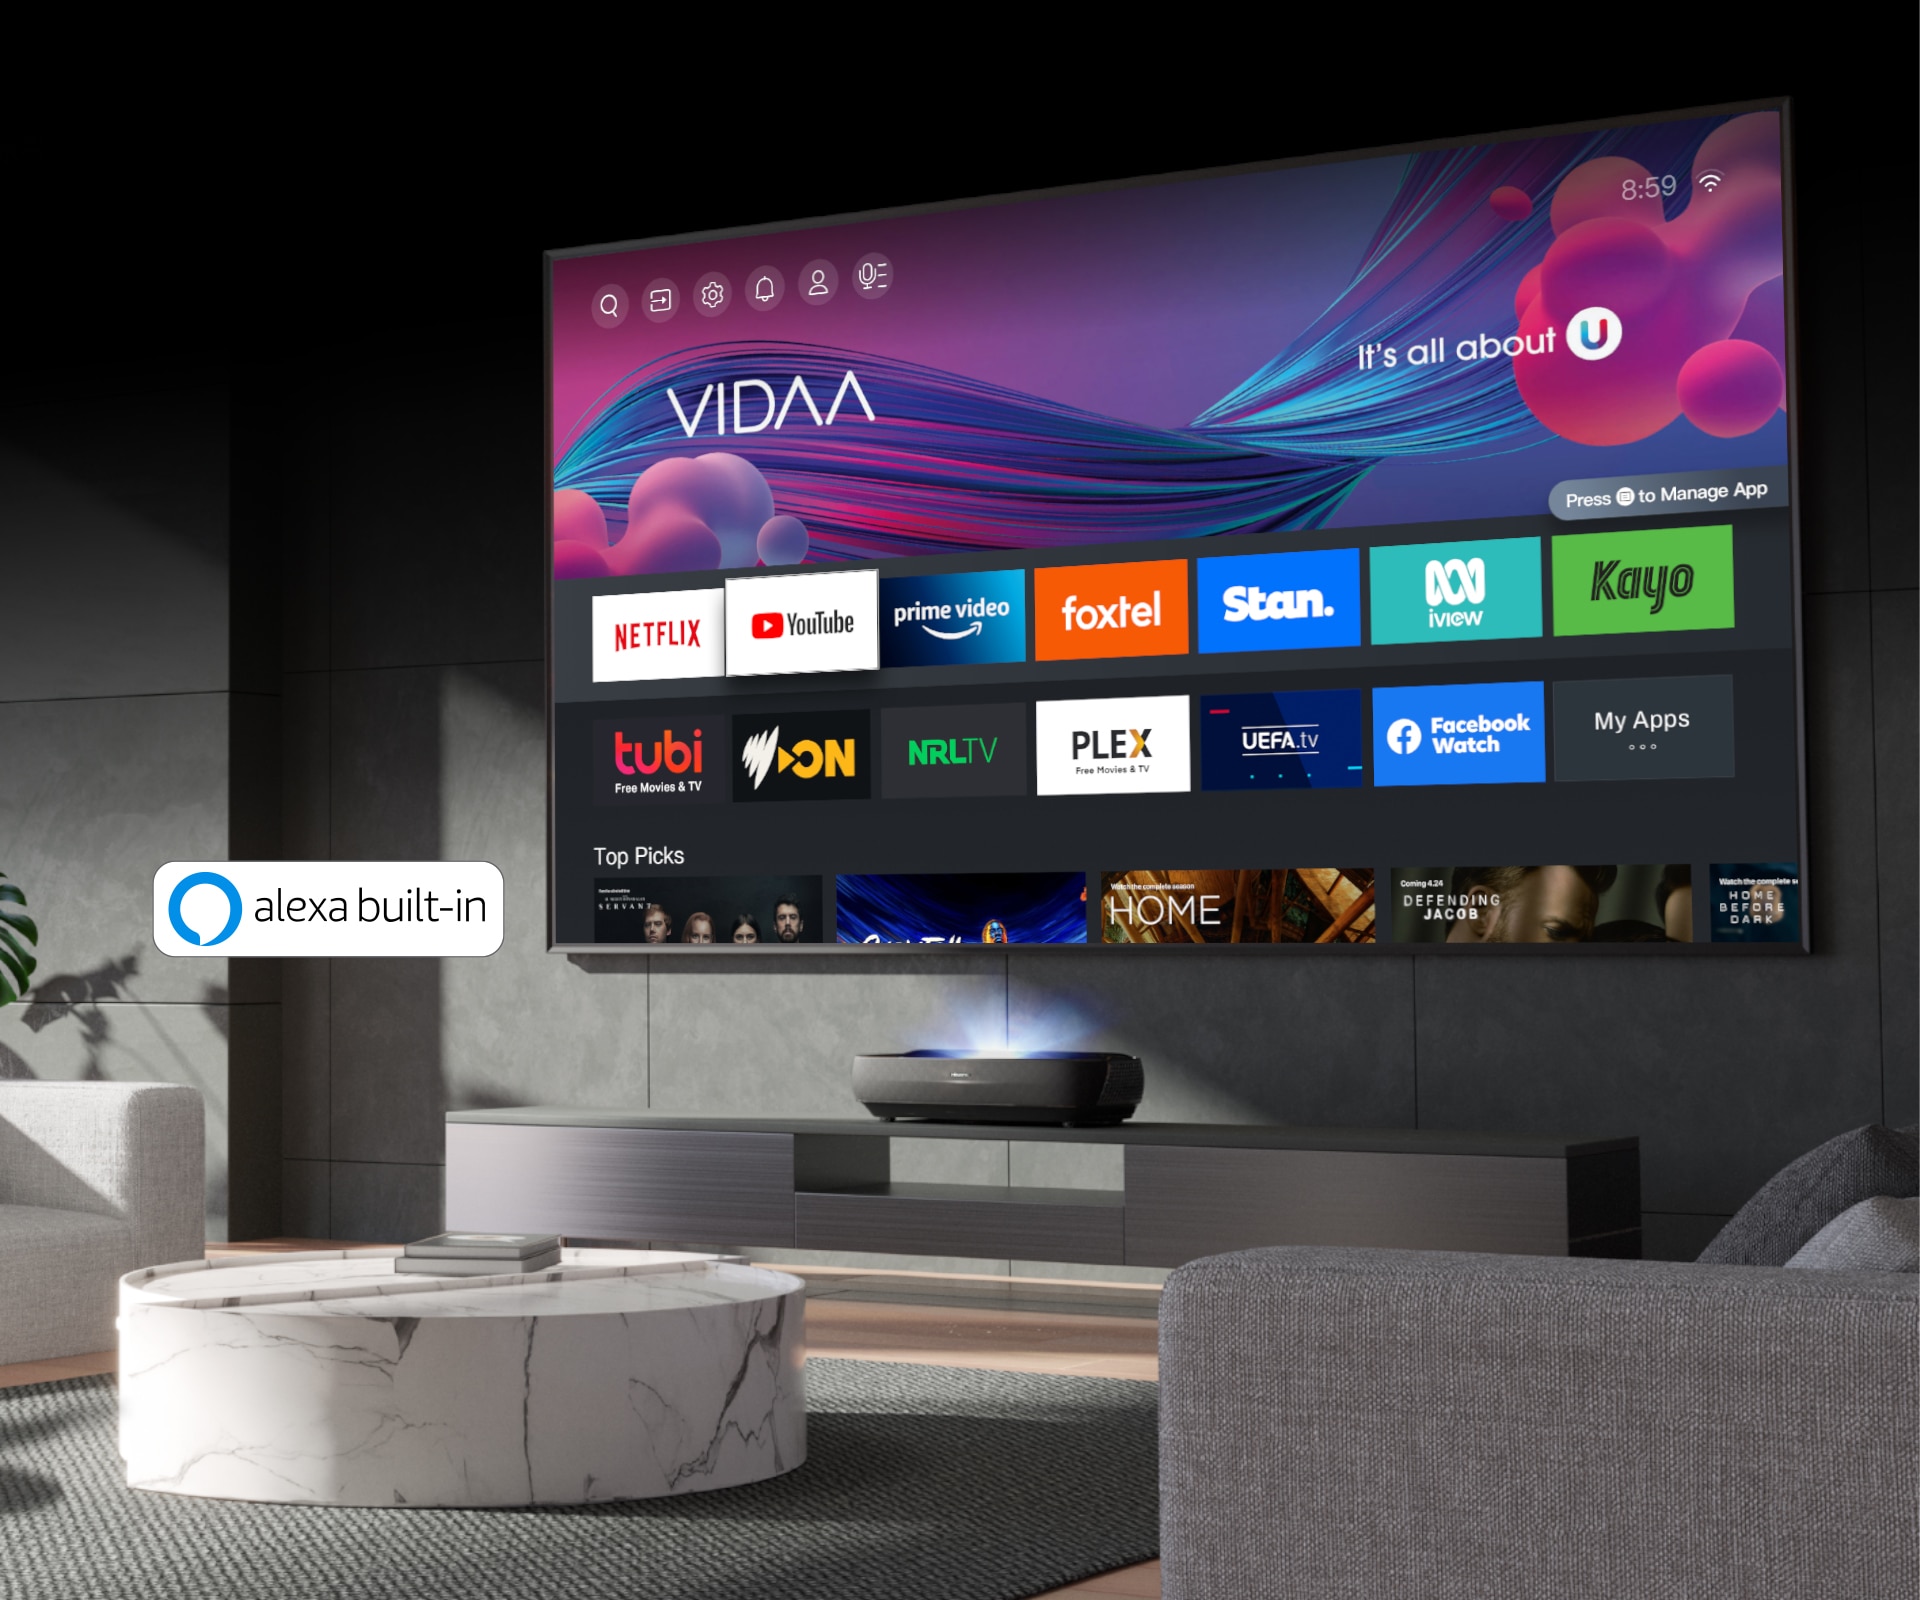 VIDAA Smart TV. Smart Home Ready